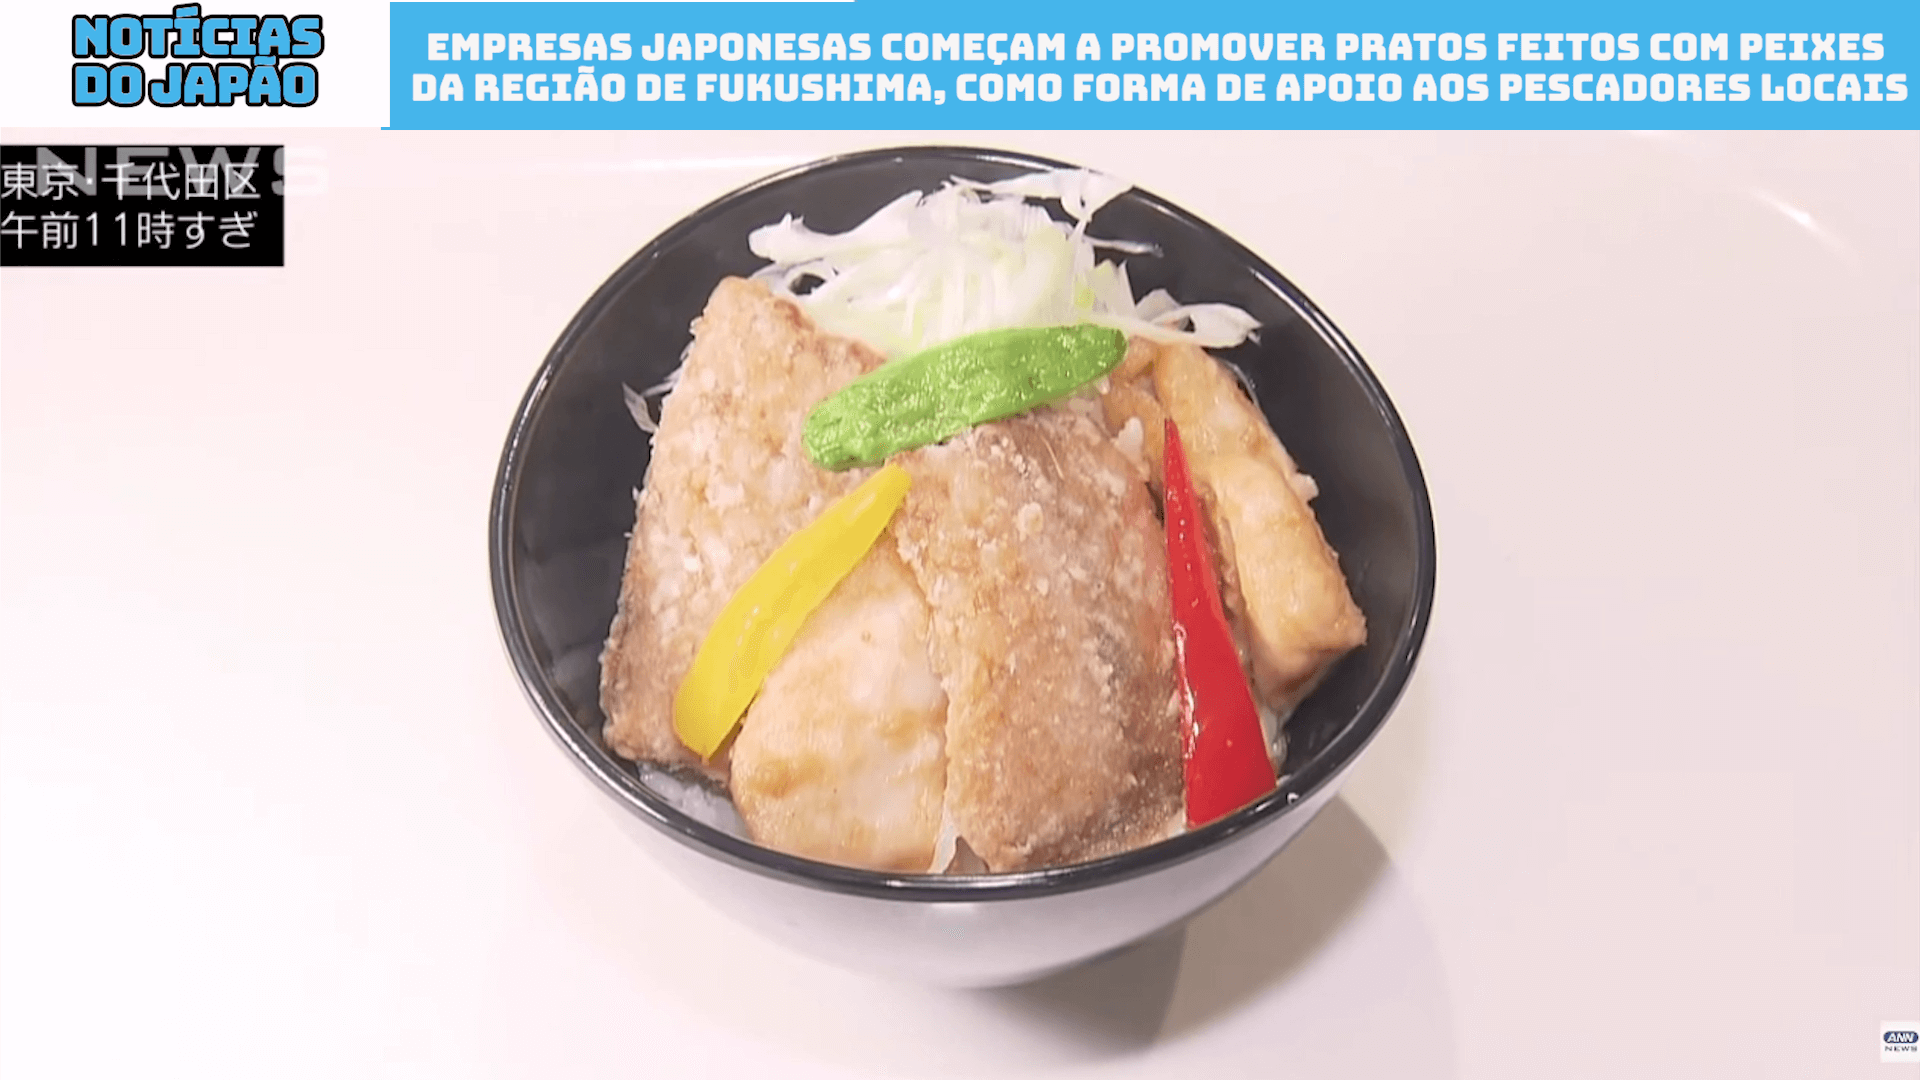 Empresas japonesas começam a promover pratos feitos com peixes da região de Fukushima, como forma de apoio aos pescadores locais 